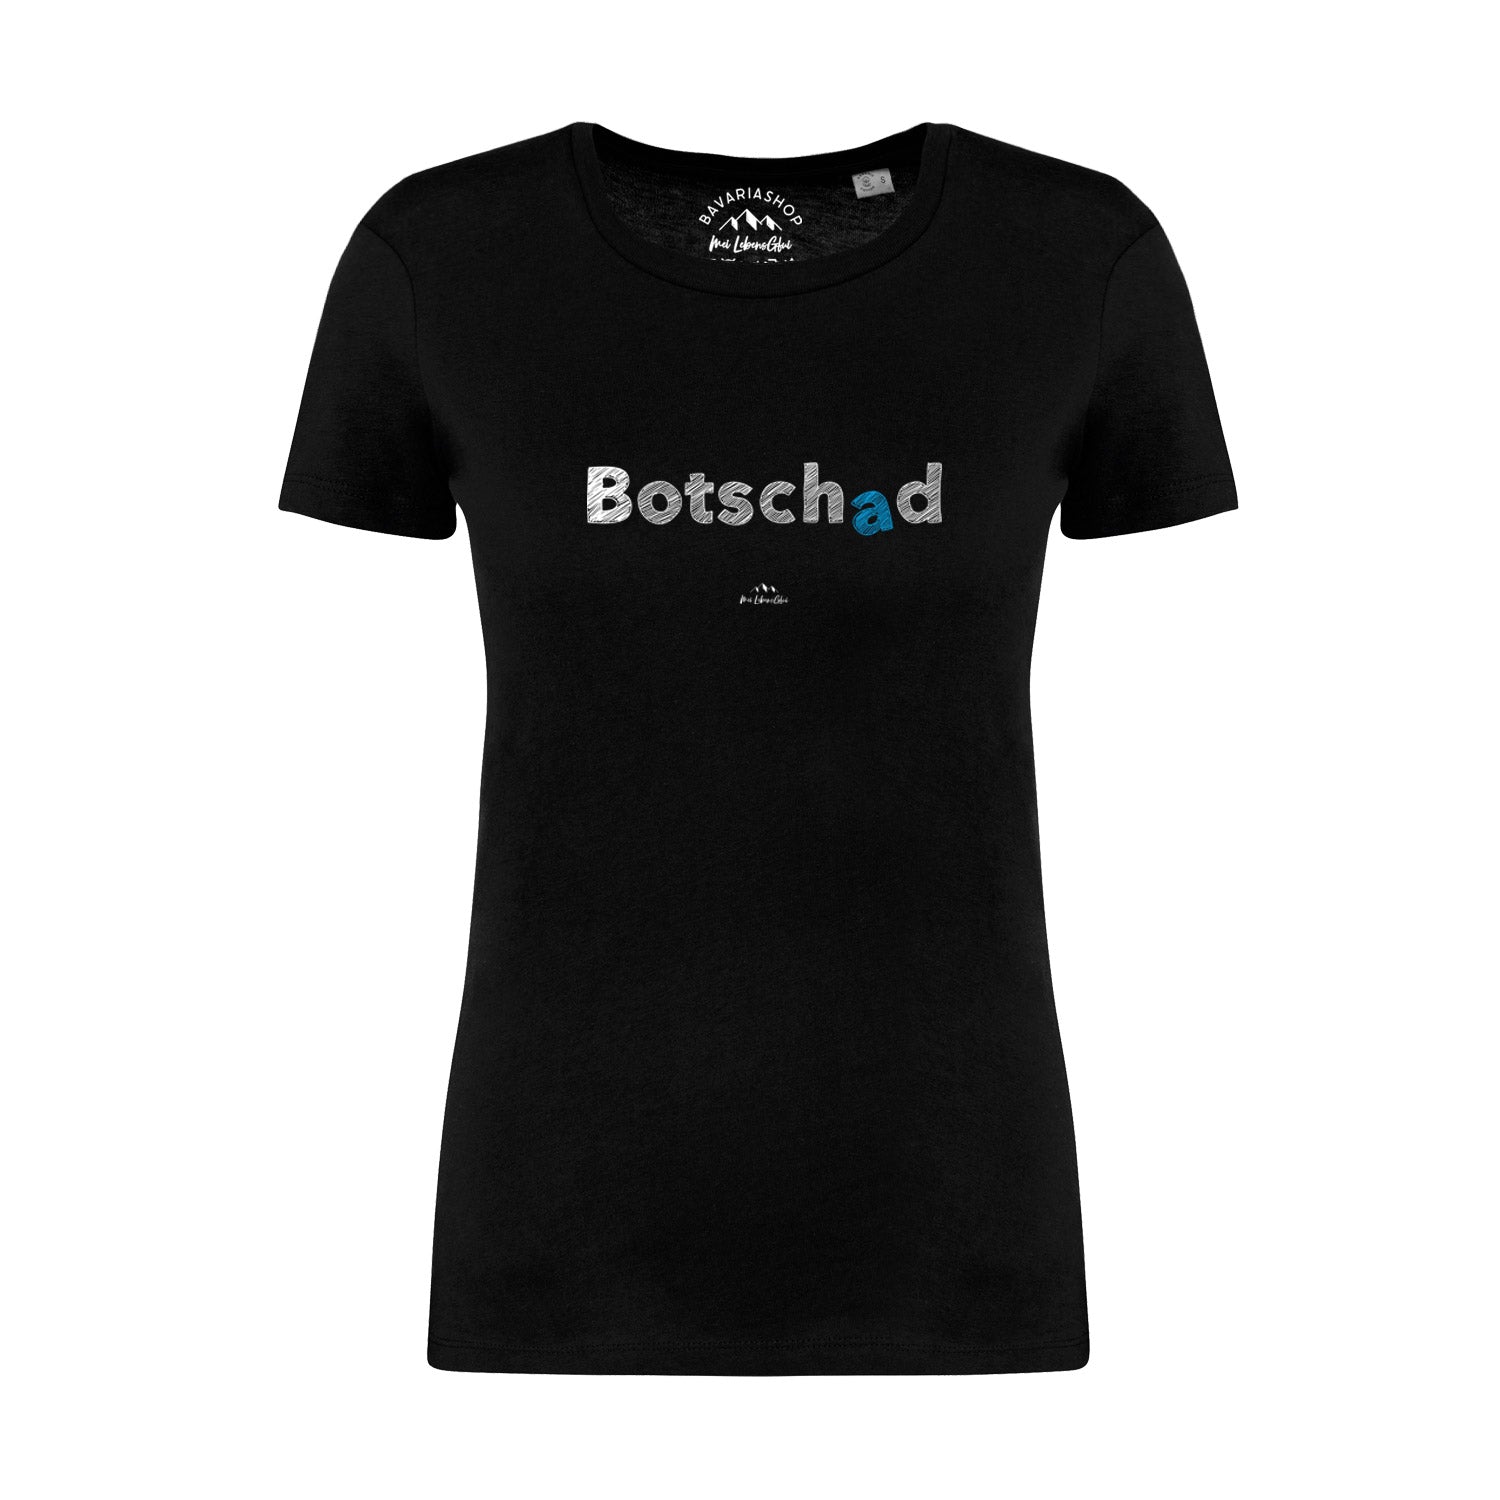 Damen T-Shirt "Botschad"